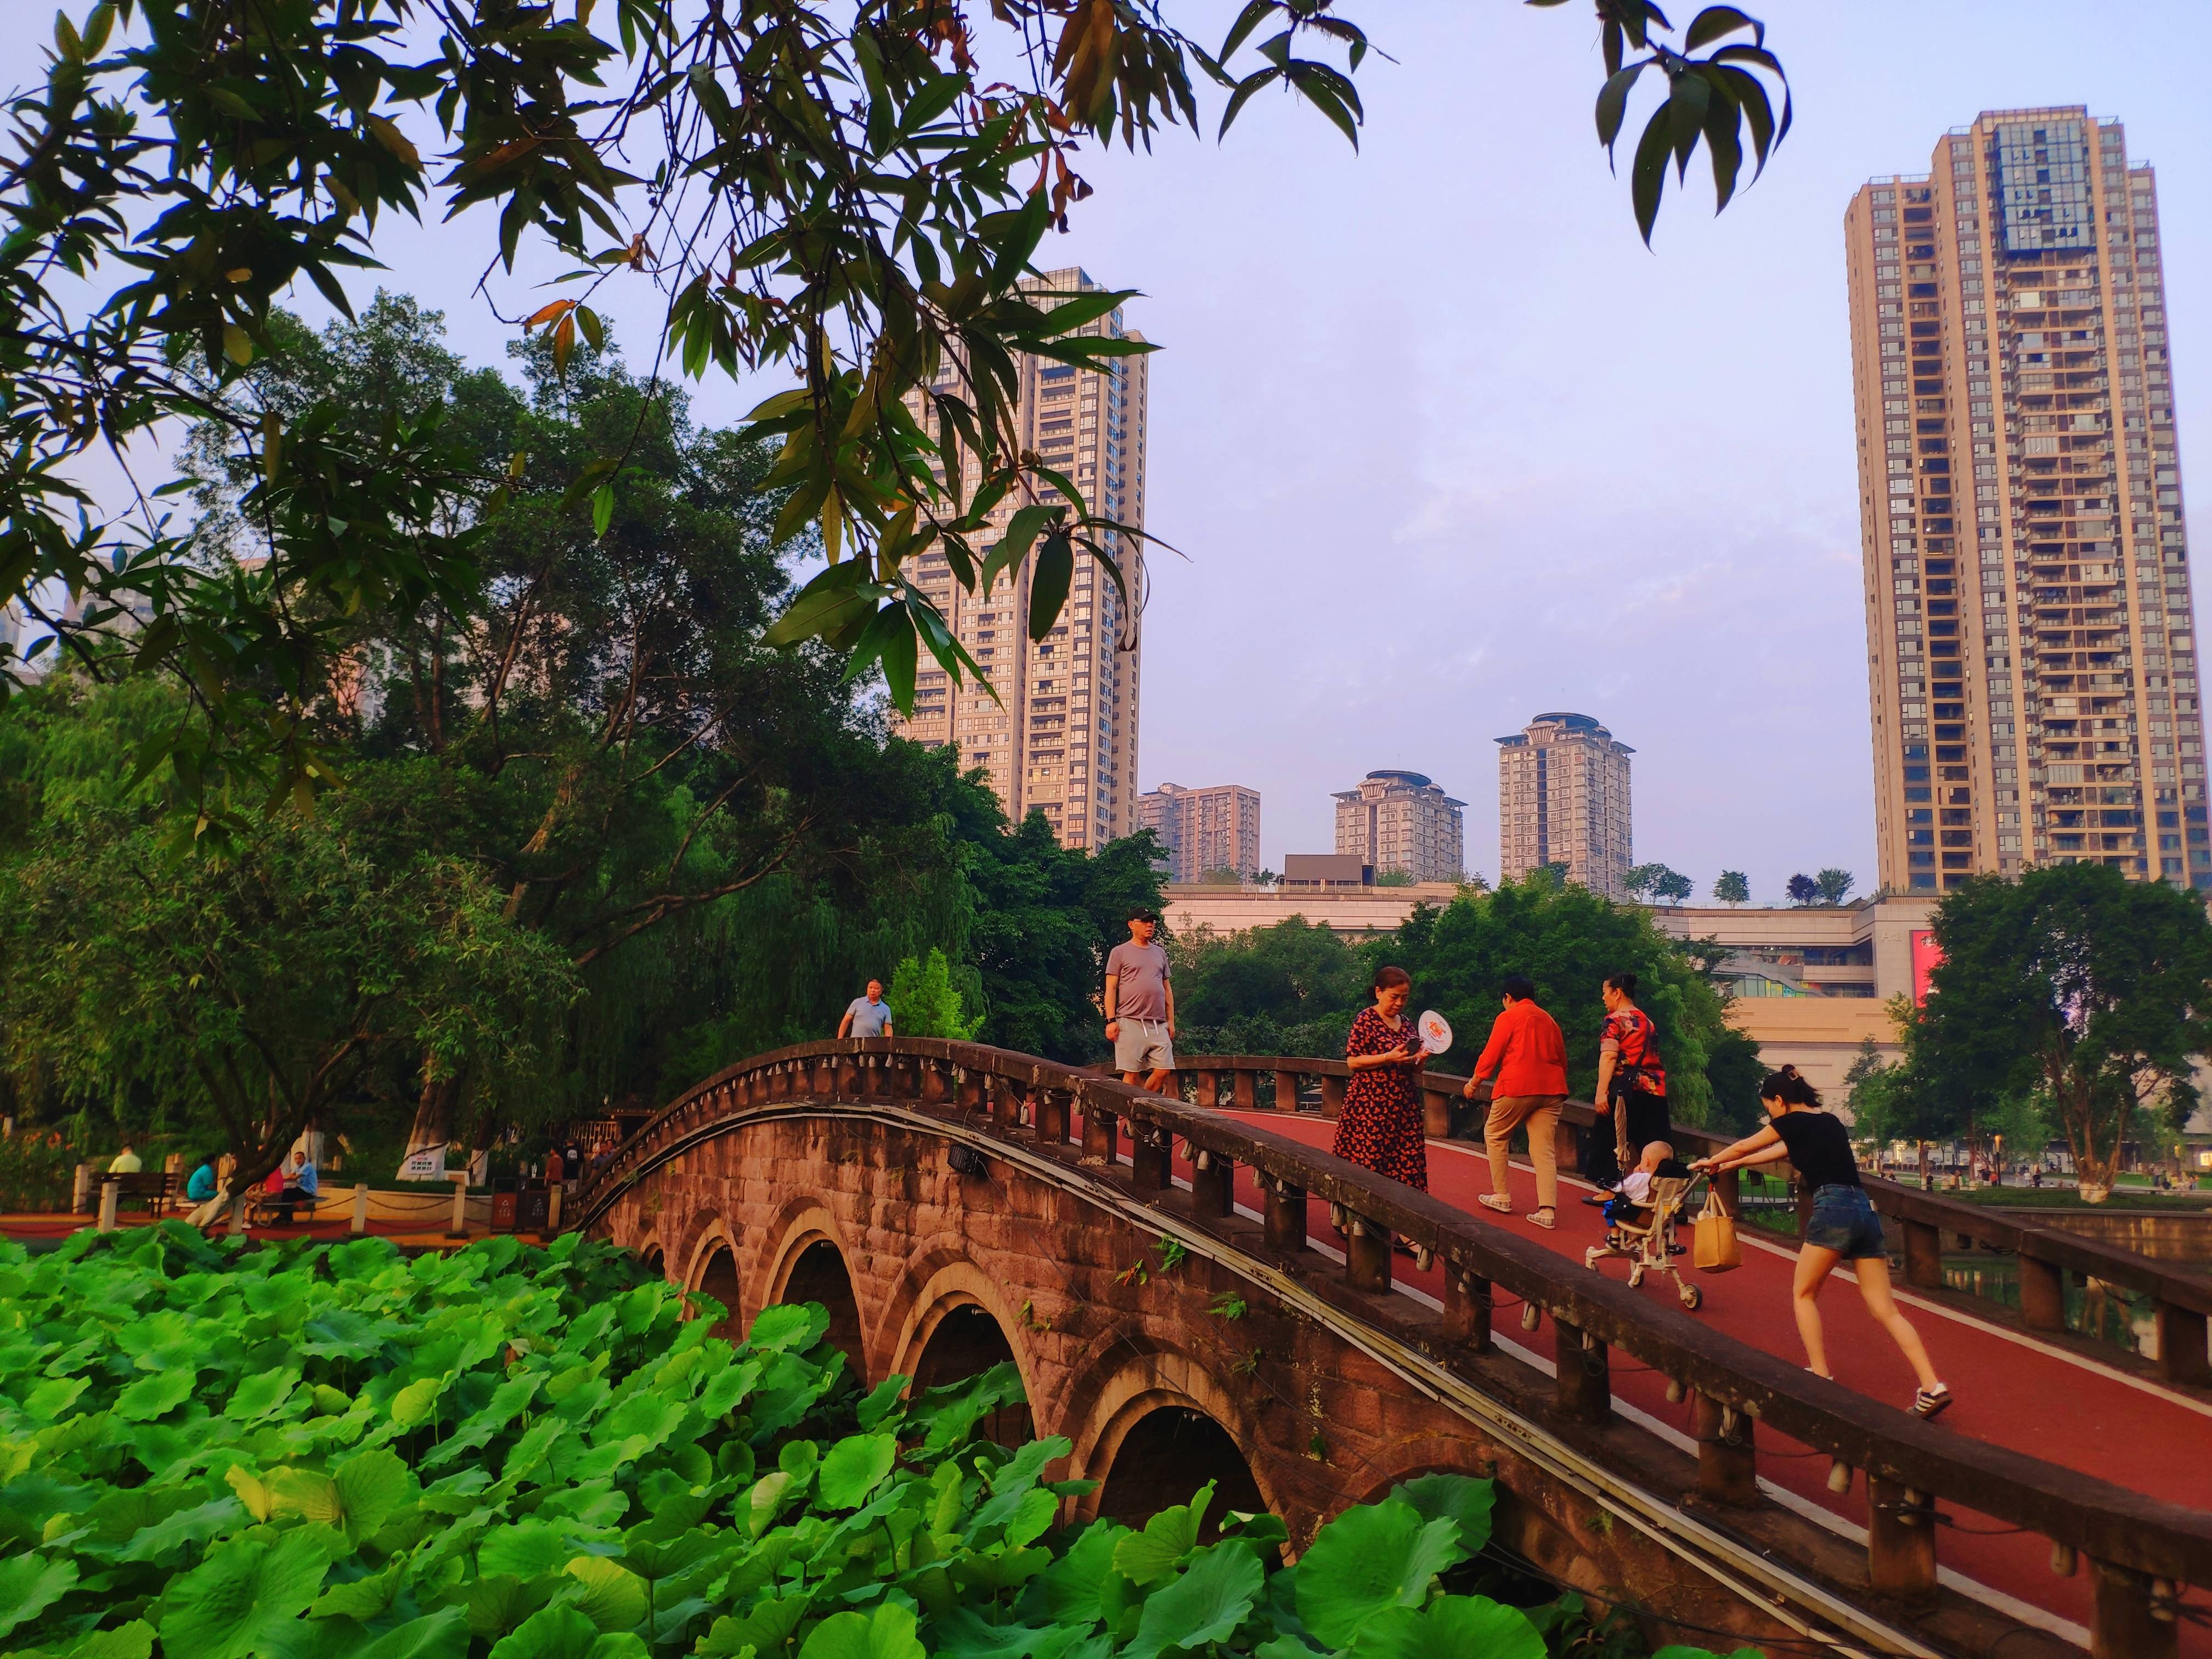 重庆大渡口公园如诗如画：绿树成荫绕步道 植物花卉映湖面